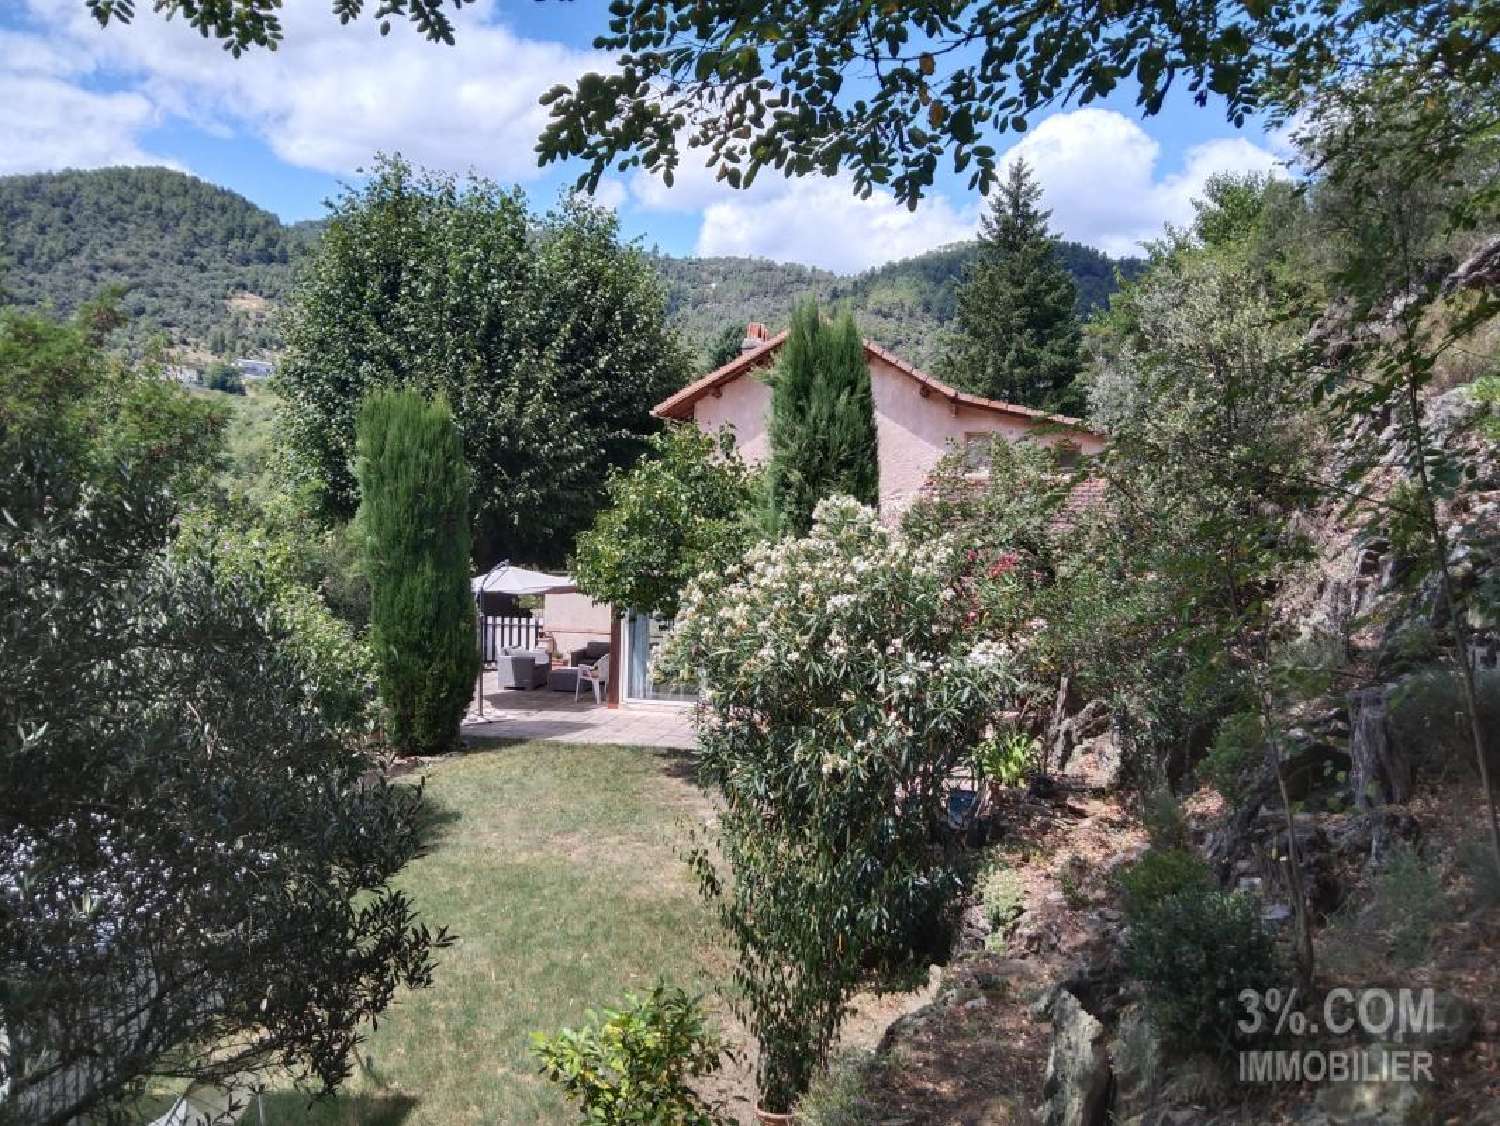  à vendre maison Saint-Vincent-de-Durfort Ardèche 2